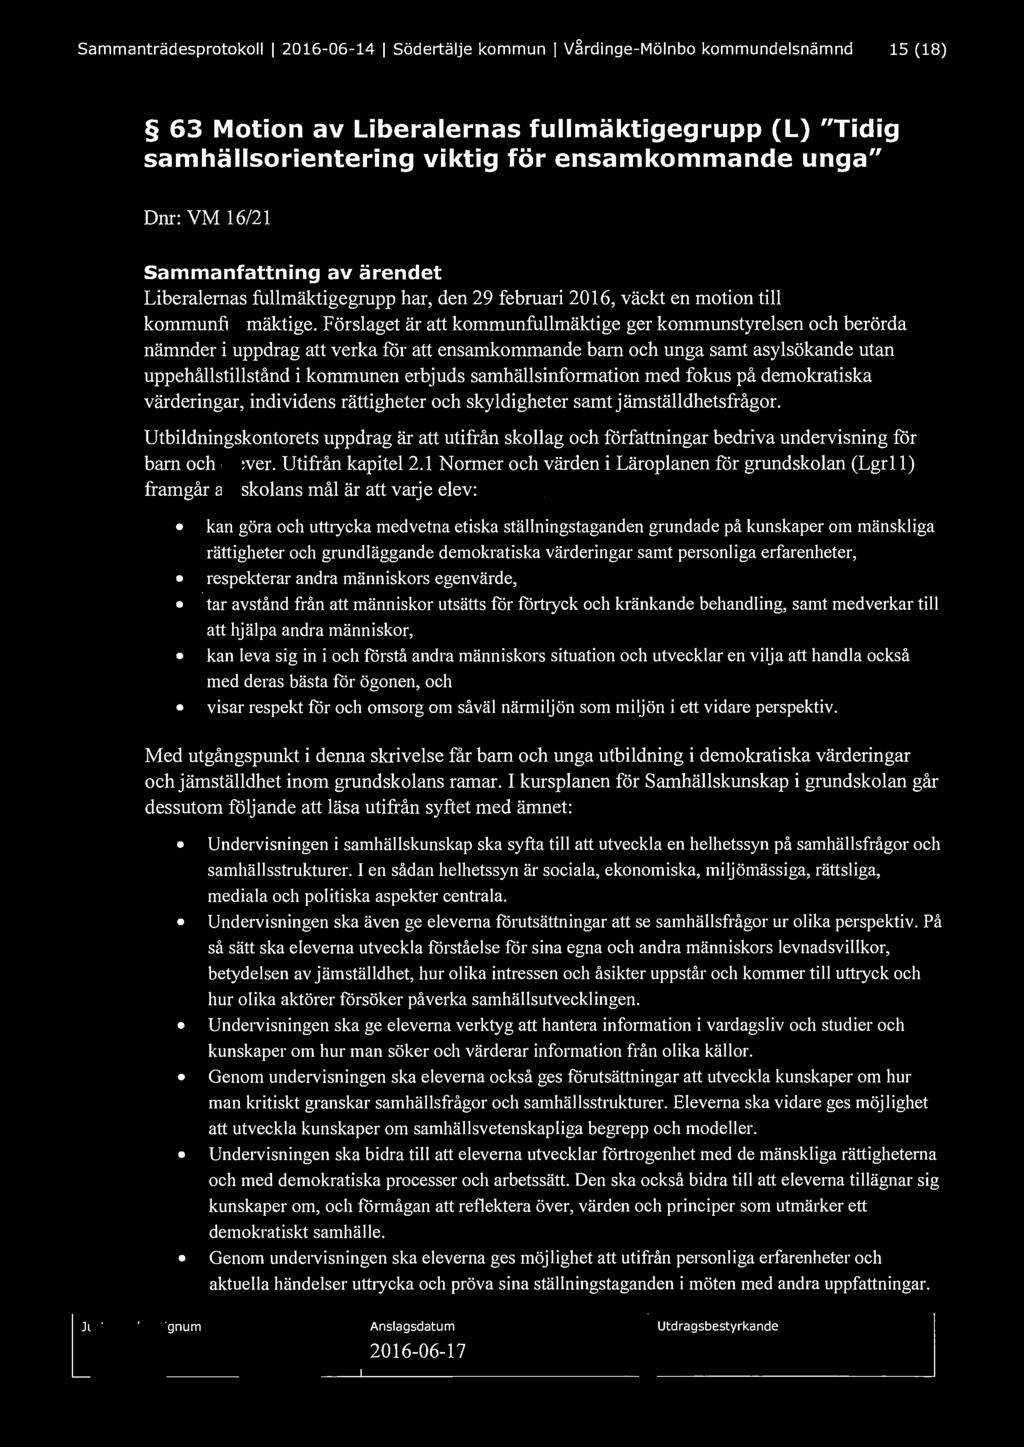 Sammanträdesprotokoll l 2016-06- 14 l Södertälje kommun l Vårdinge-Mölnbo kommundelsnämnd 15 (18) 63 Motion av Liberalernas fullmäktigegrupp (L) "Tidig samhällsorientering viktig för ensamkommande